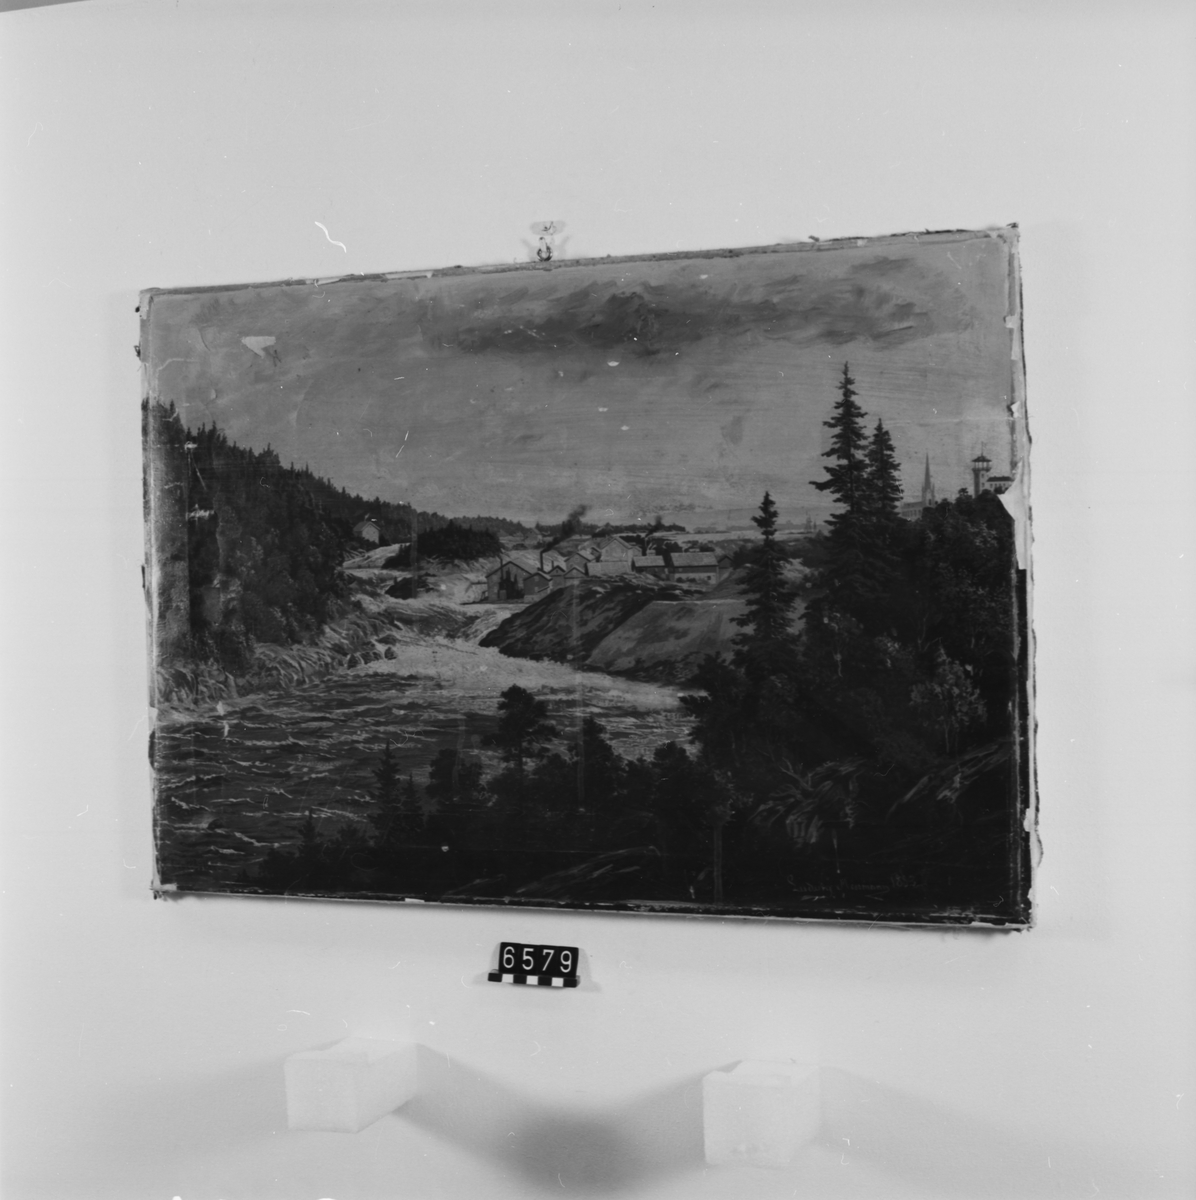 Oljetryck efter tavla, signerad Neumann 1883. Totalvy över Trollhättefallen. Delvis övermålat i olja, särskilt himlen. Uppklistrat på en duk på spännram.